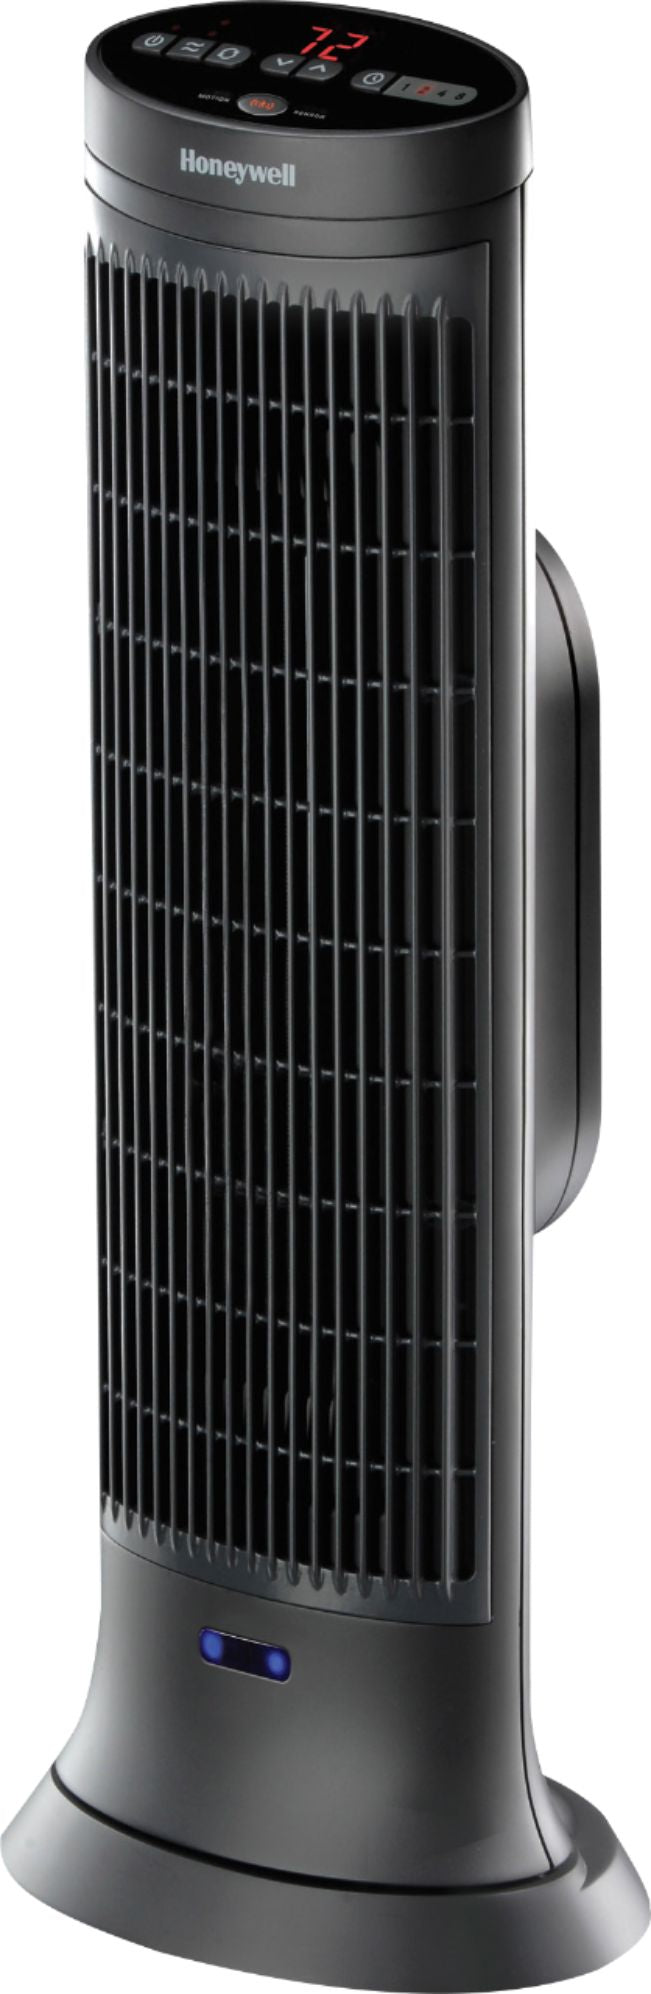 Honeywell - Ceramic Tower Heater - Slate Gray_1